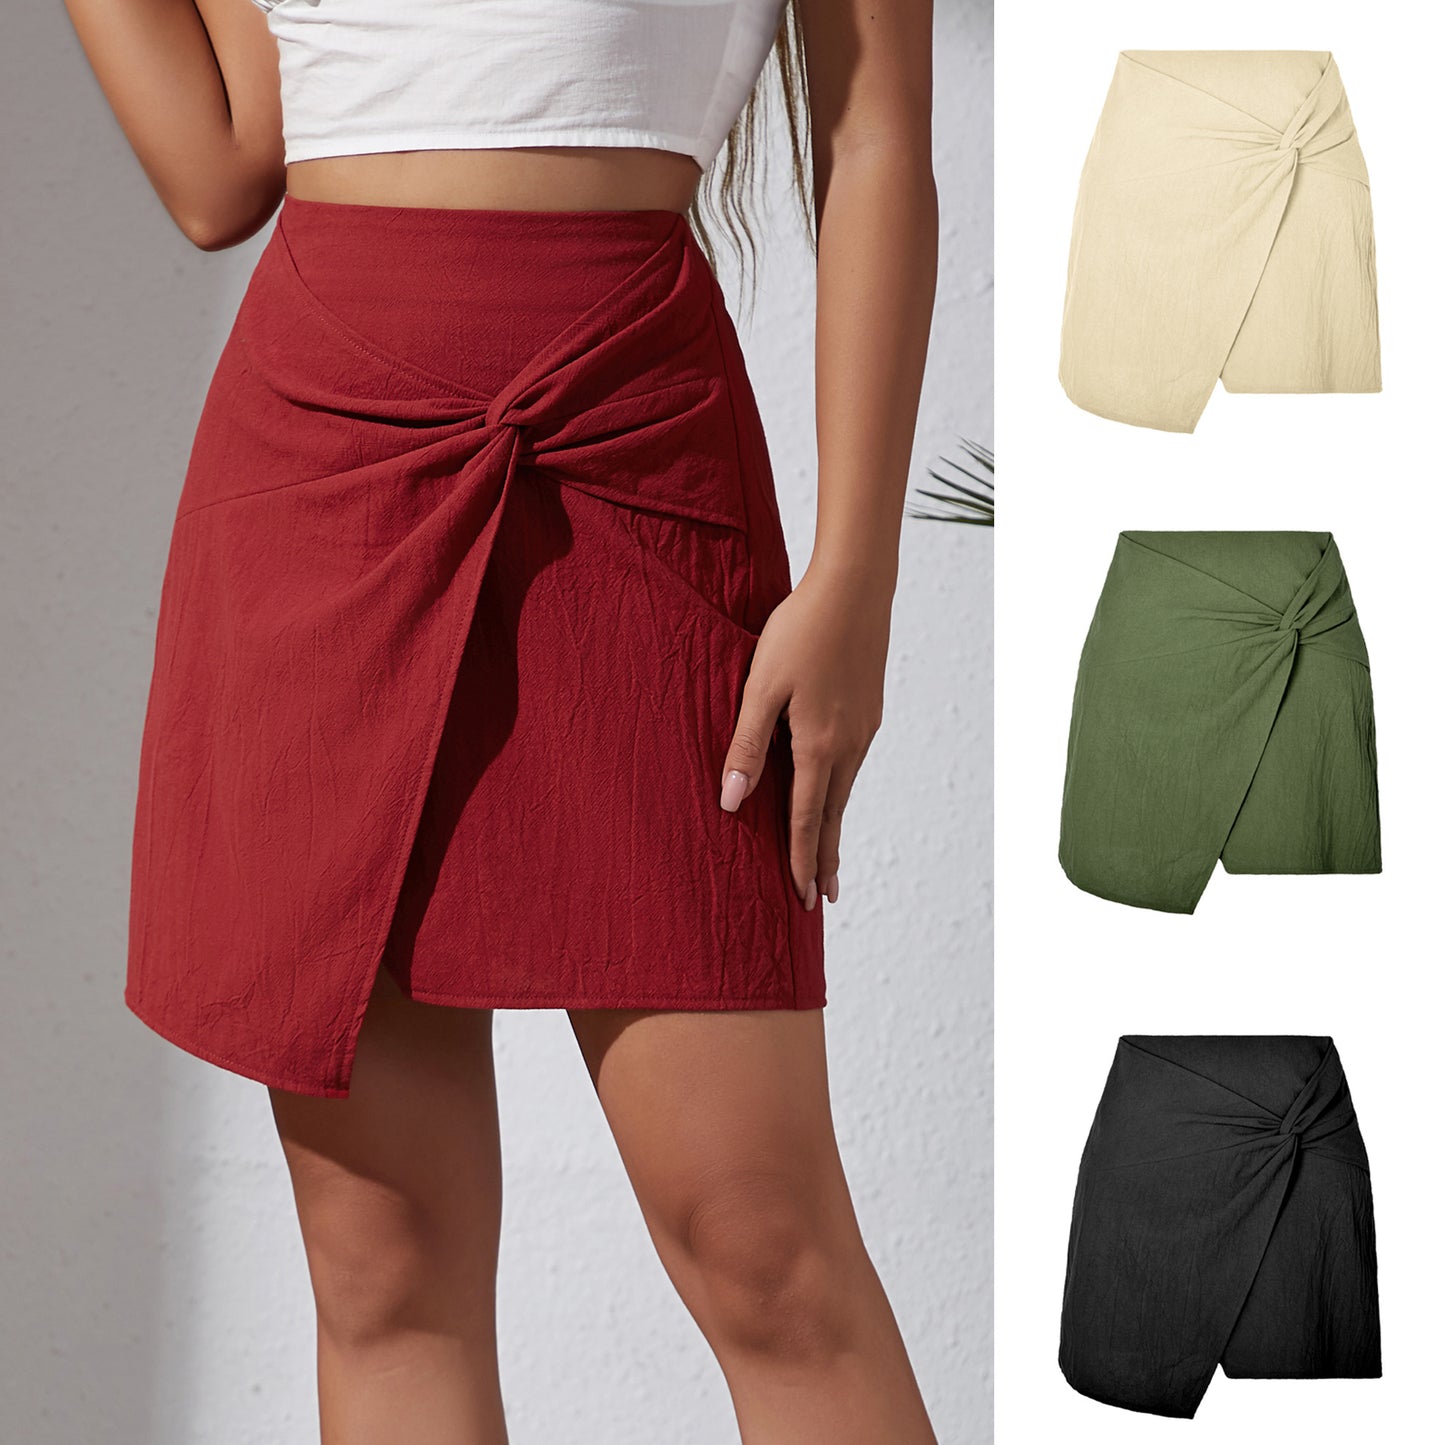 Women's High Waist Cotton And Linen Twisted Skirt